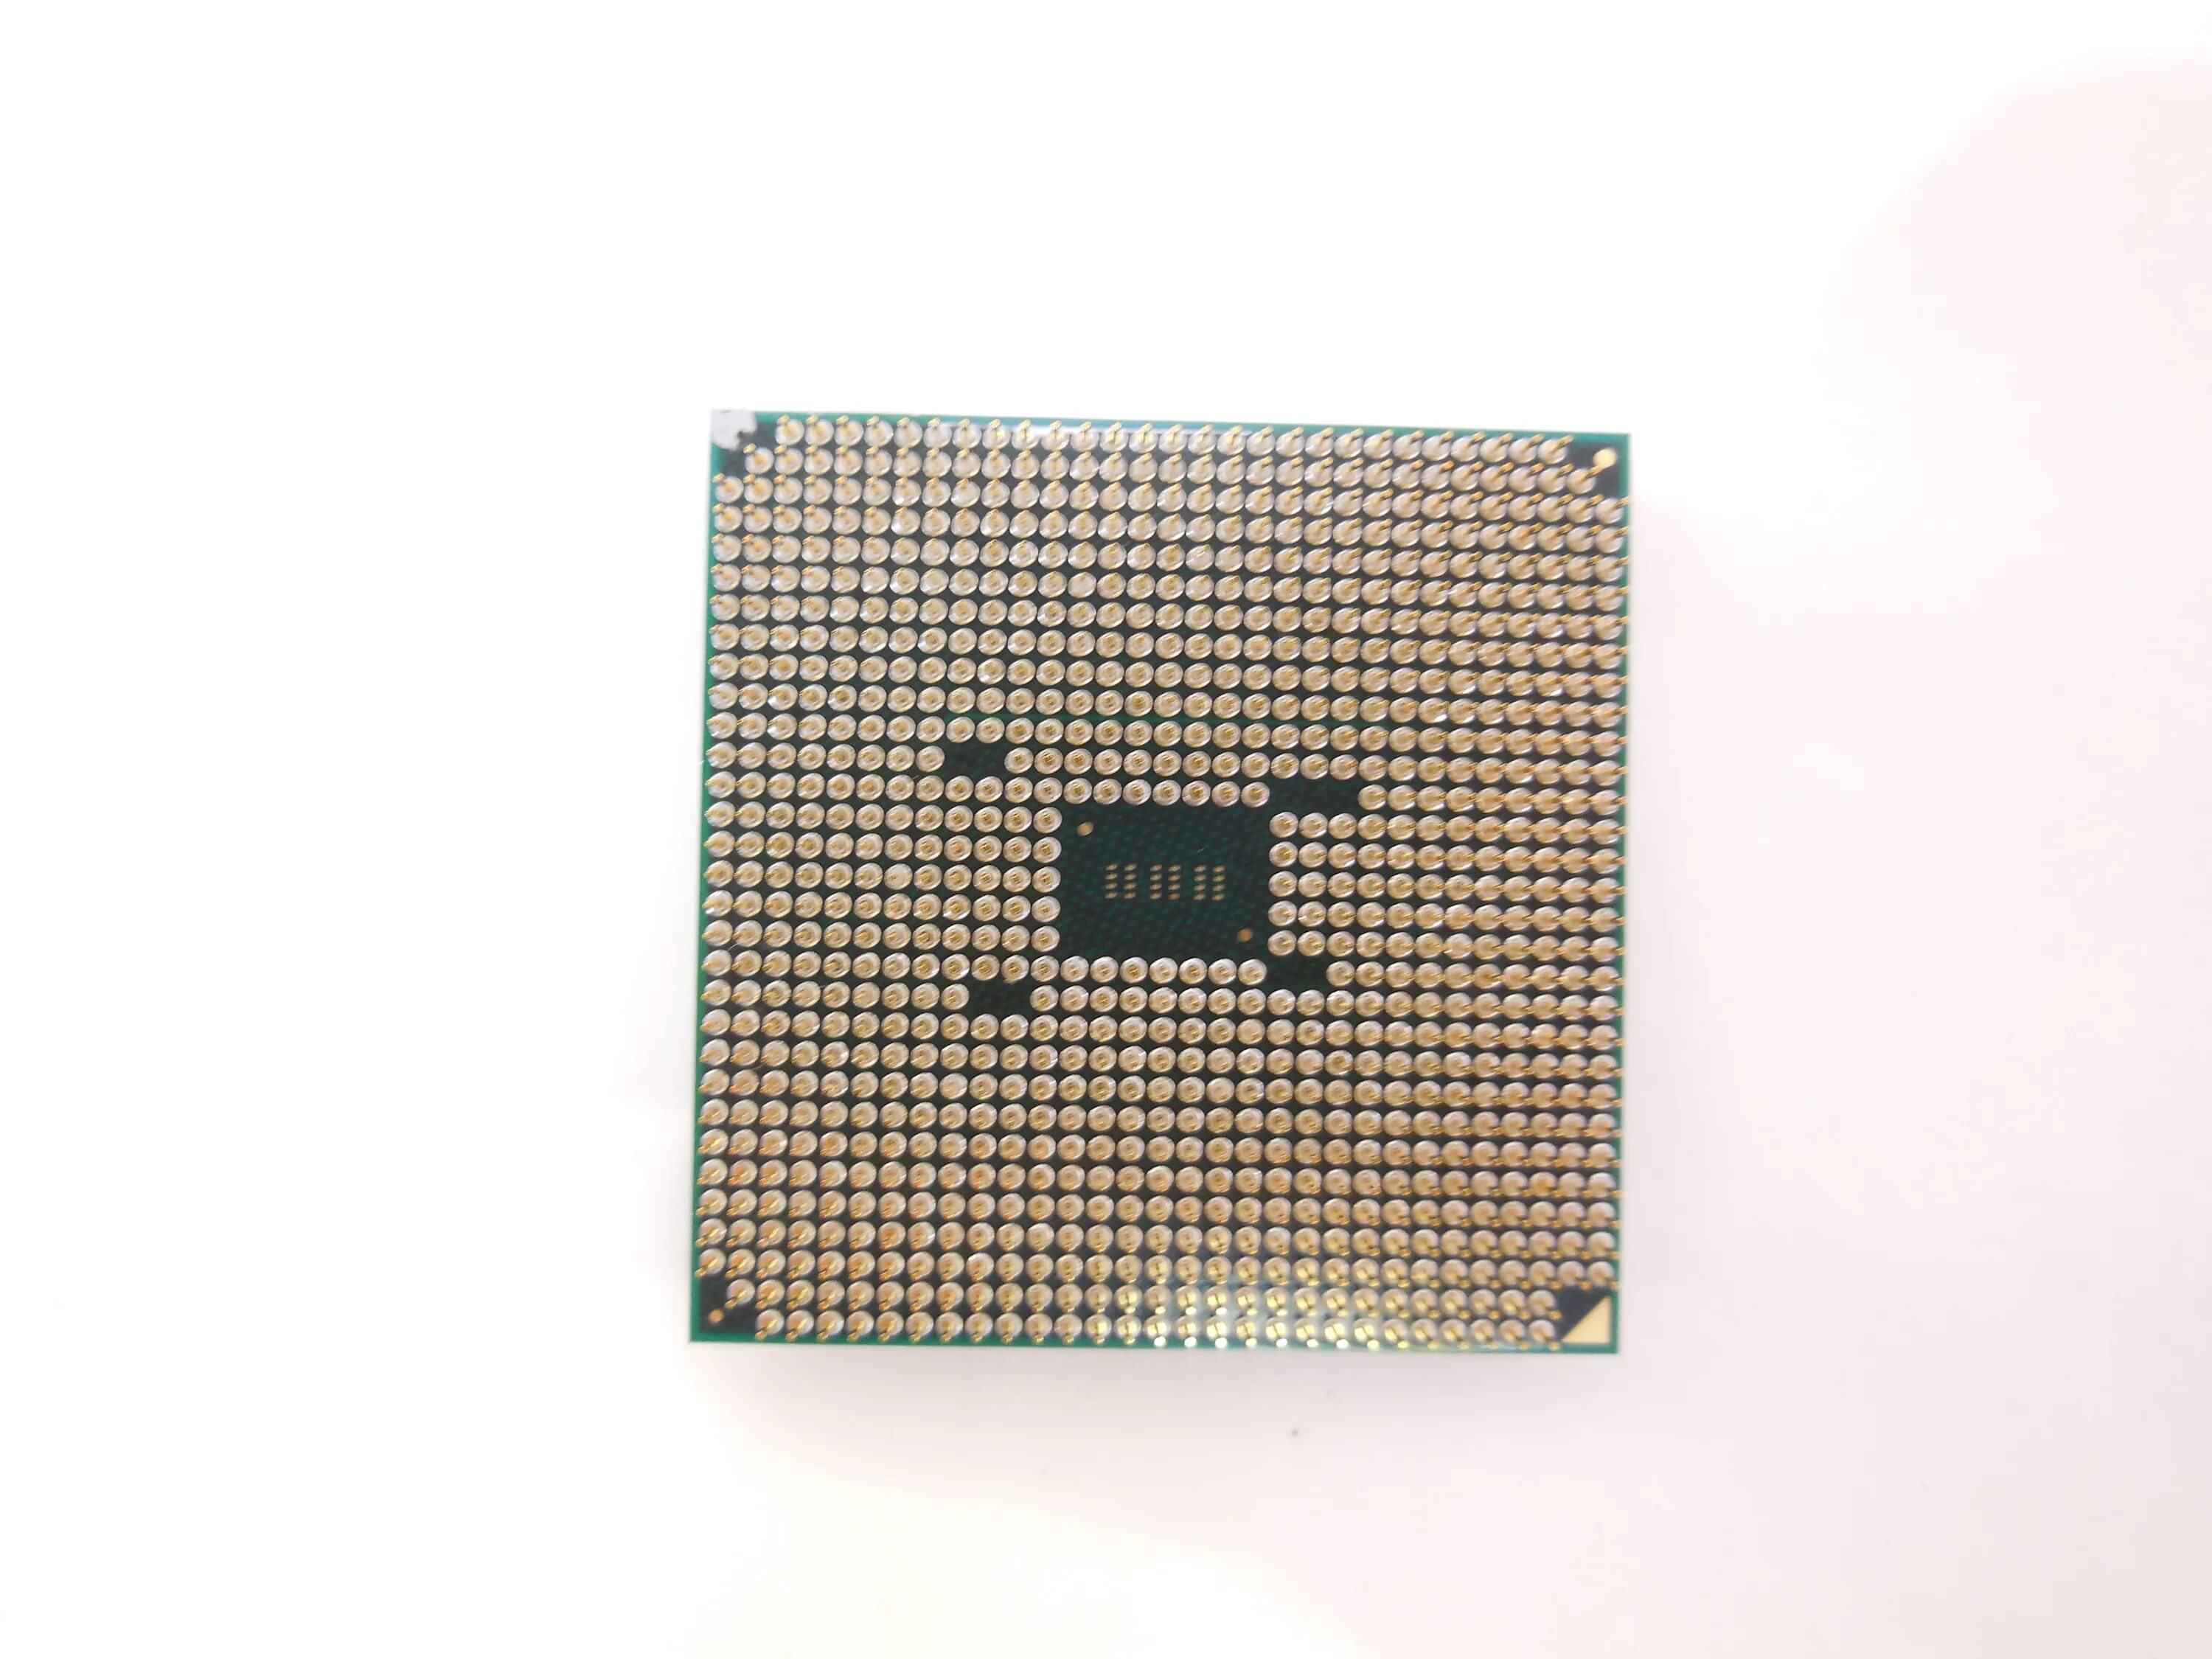 Процессоры 4 ядра частота 4 ггц. Athlon x4 840. Процессор AMD Athlon x4 840. Athlon x4 840 fm2+. Процессор AMD a4-3300 Llano.